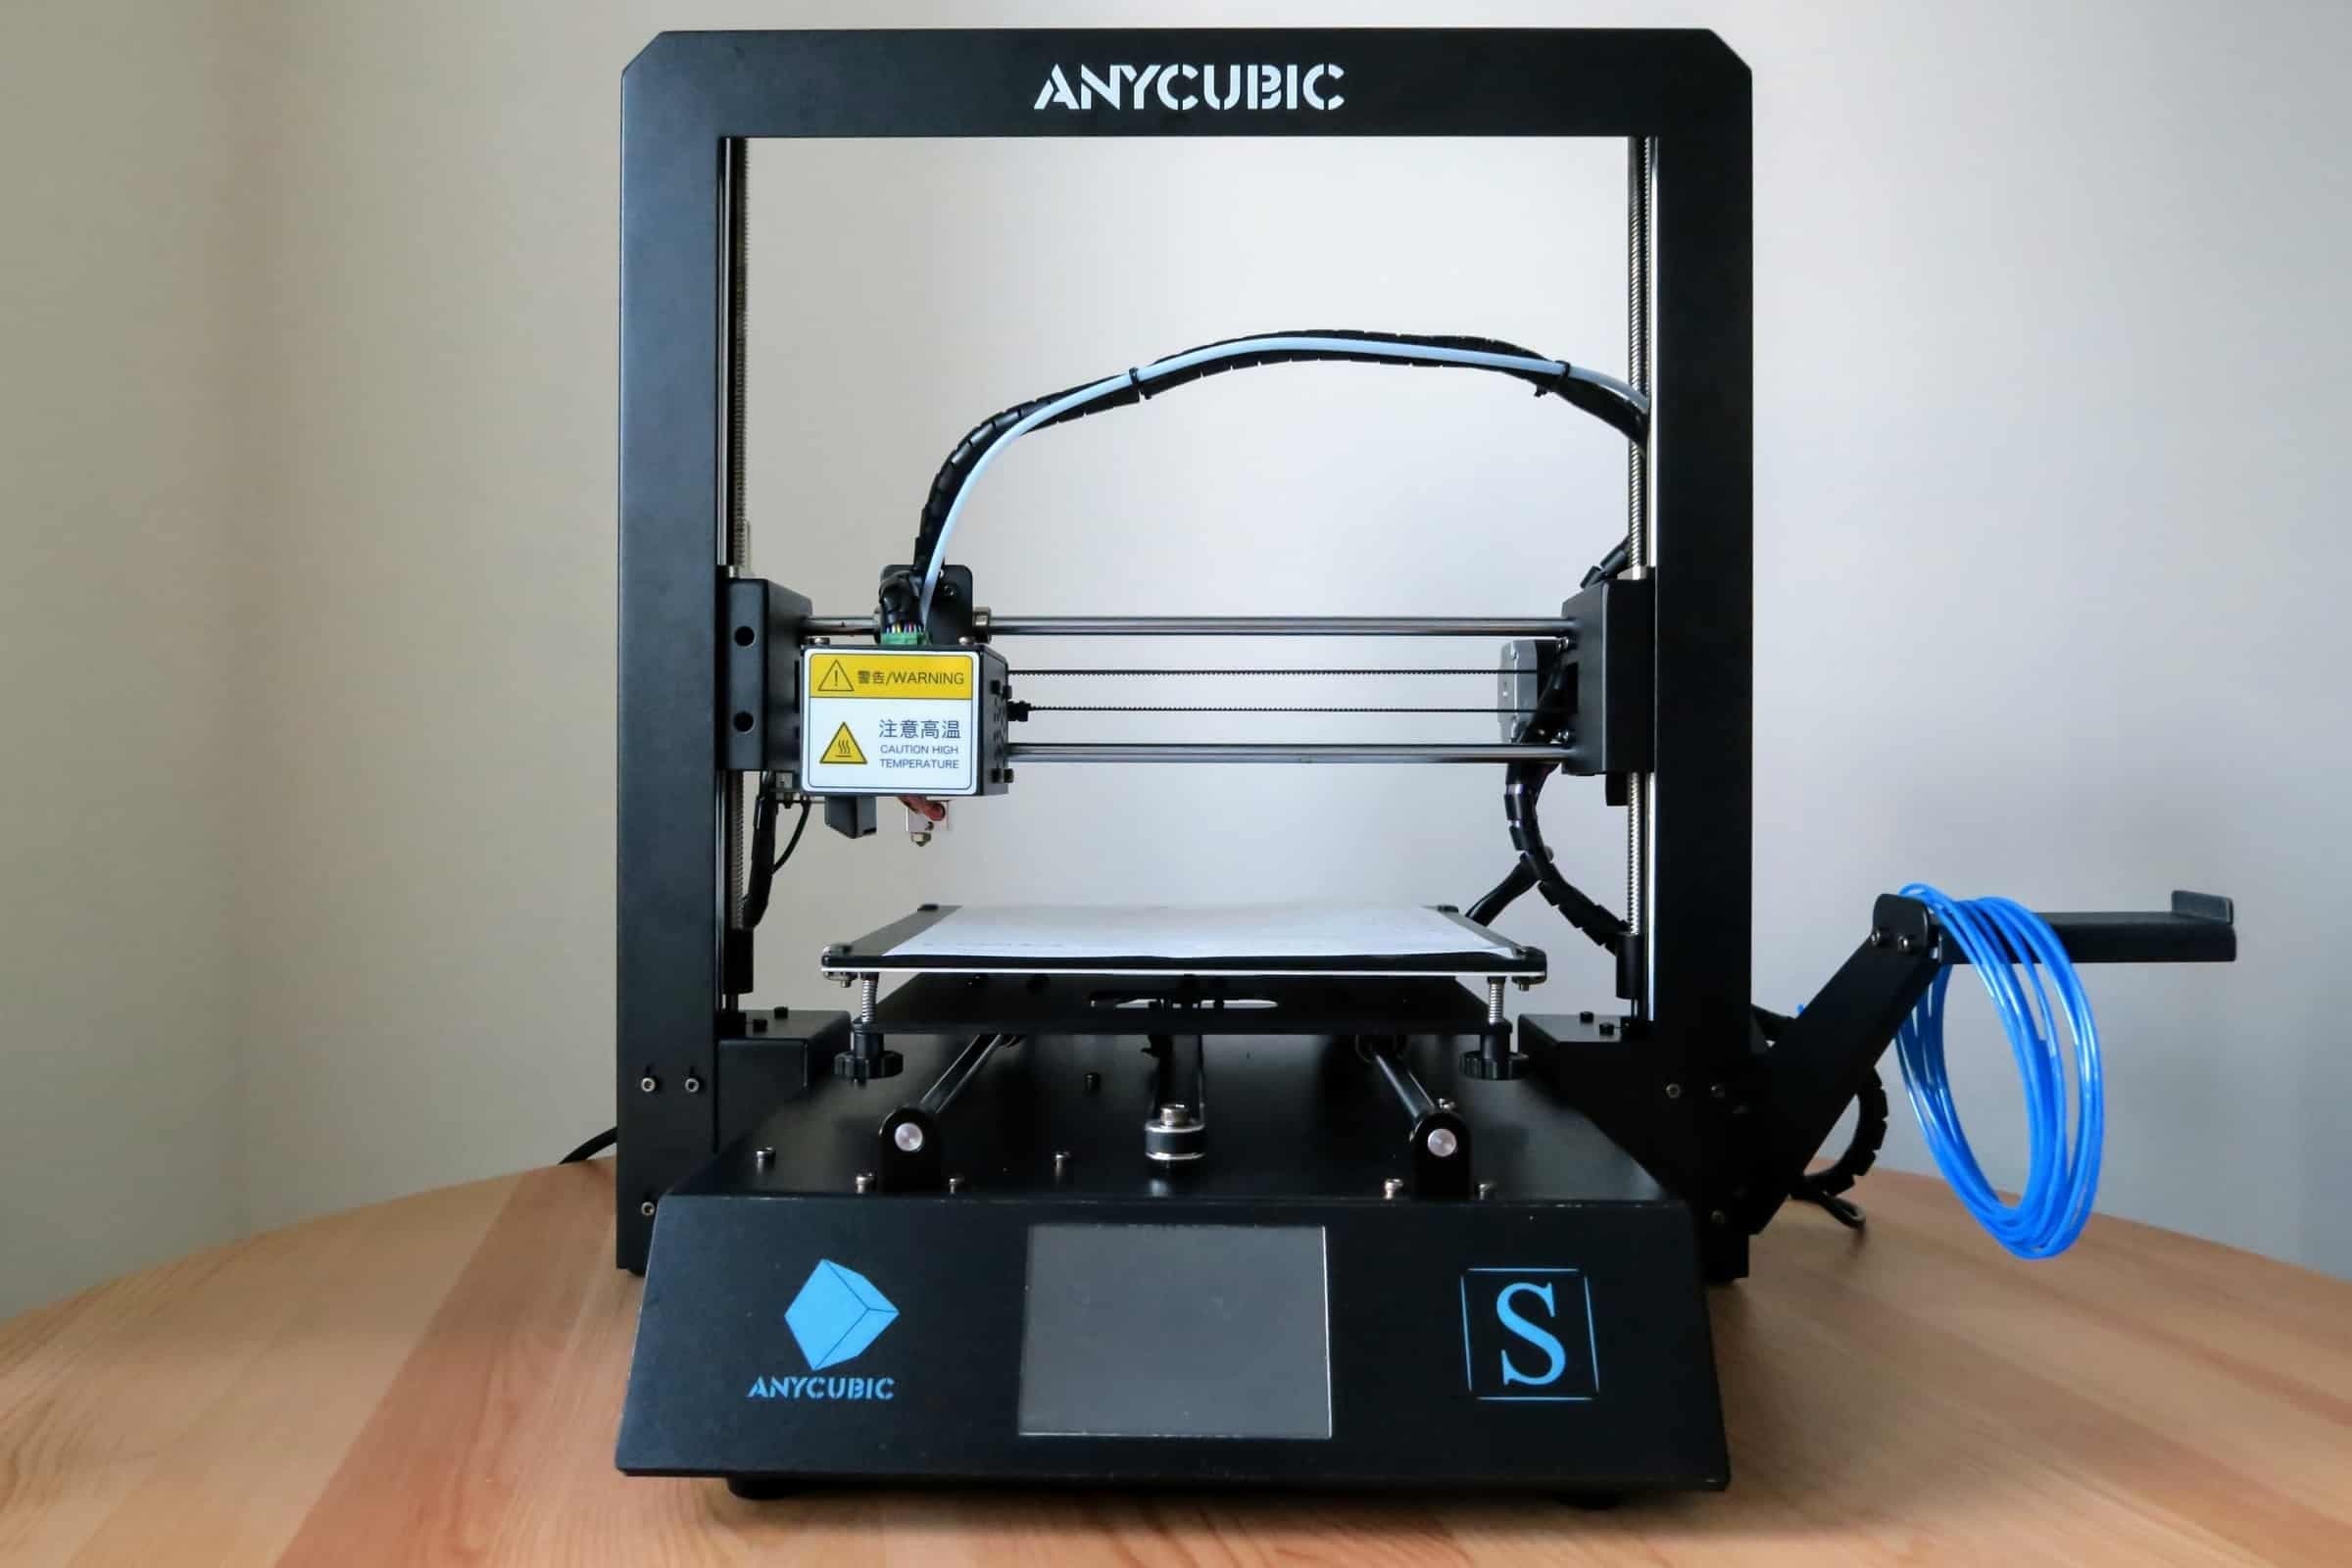 Купить принтер anycubic. 3d принтер Anycubic Mega-s. Принтер Anycubic i3 Mega. 3d принтер Anycubic i3. 3d-принтер Anycubic Mega-s черный.